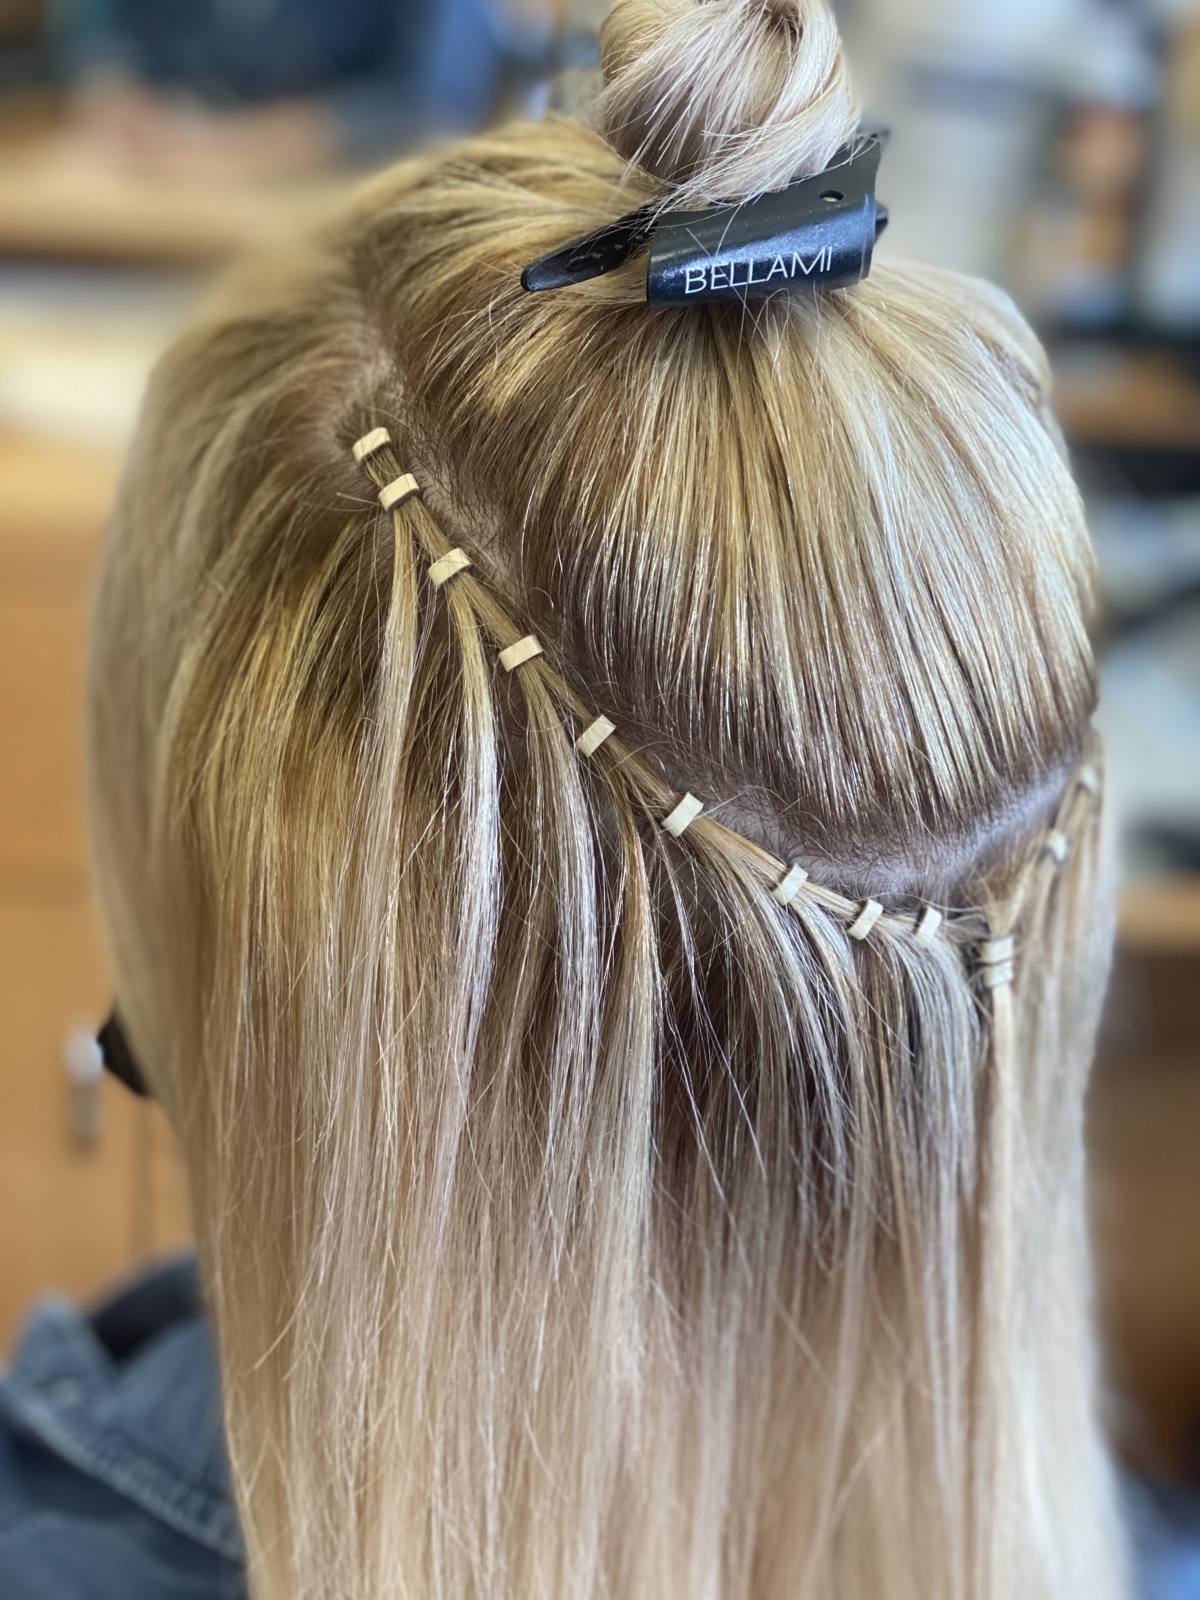 Hair Extension Hair Care - The Rachel Ani - Dallas, TX